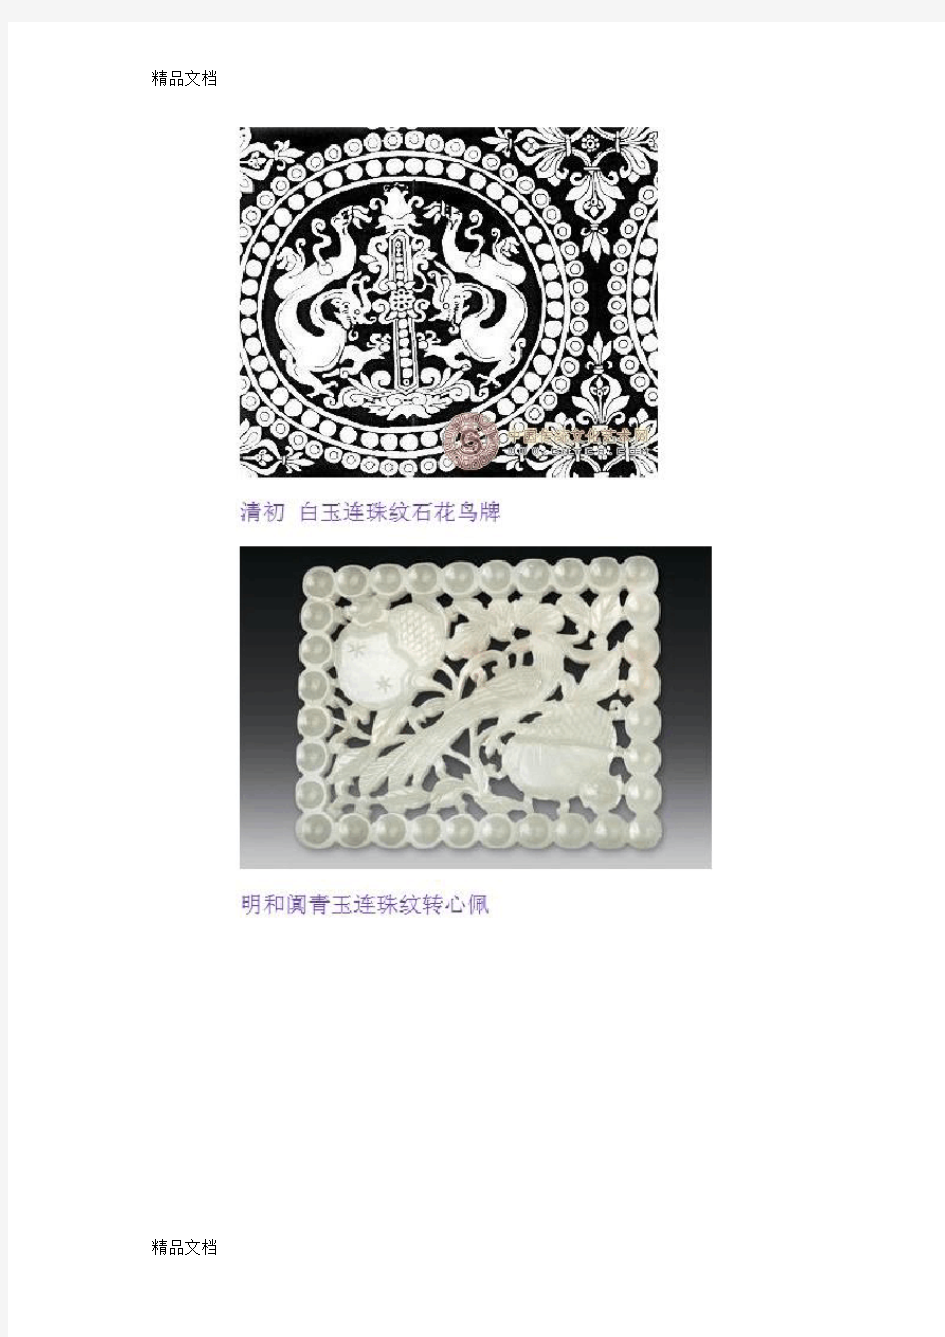 中国传统纹样 几何纹样篇教学文案